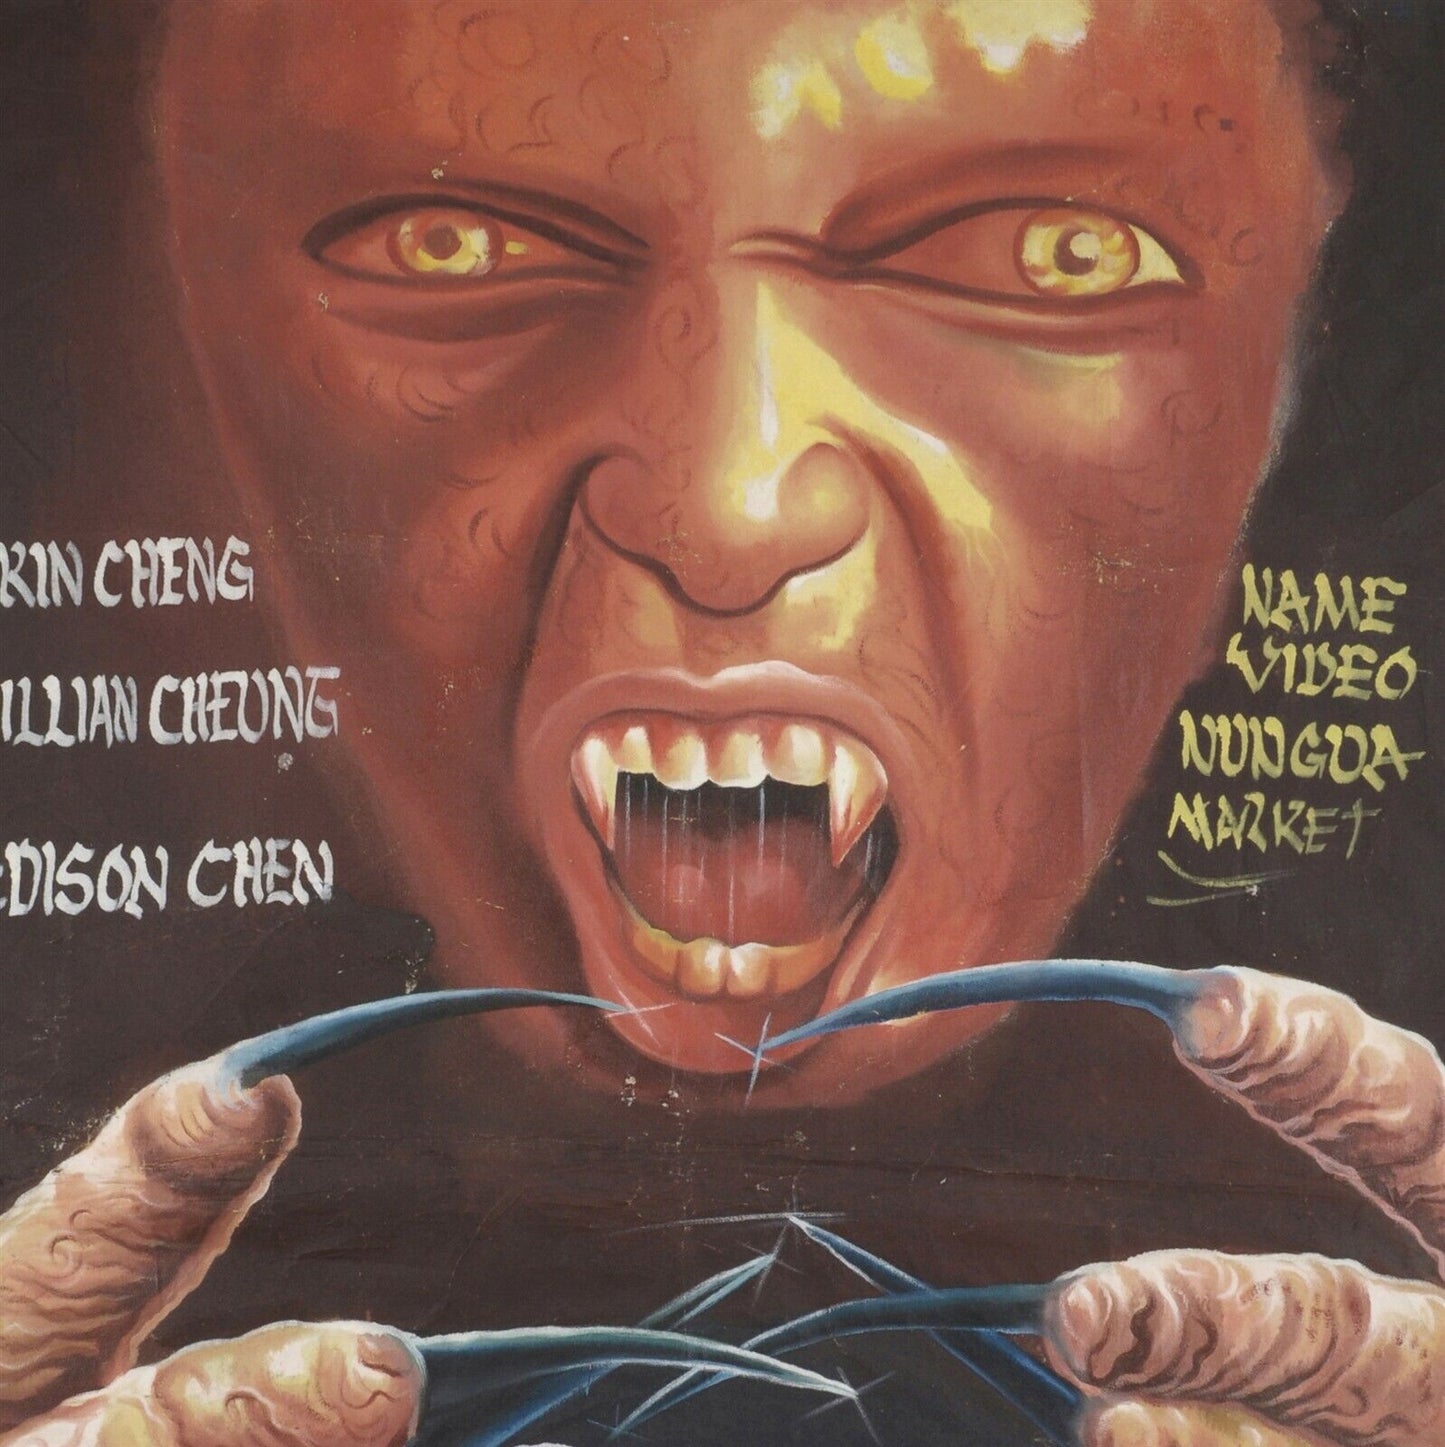 Αφίσα ταινίας της Γκάνας Αφρικανικός κινηματογράφος λαϊκός τοίχος ζωγραφισμένος στο χέρι EFFECT VAMPIRE - Tribalgh